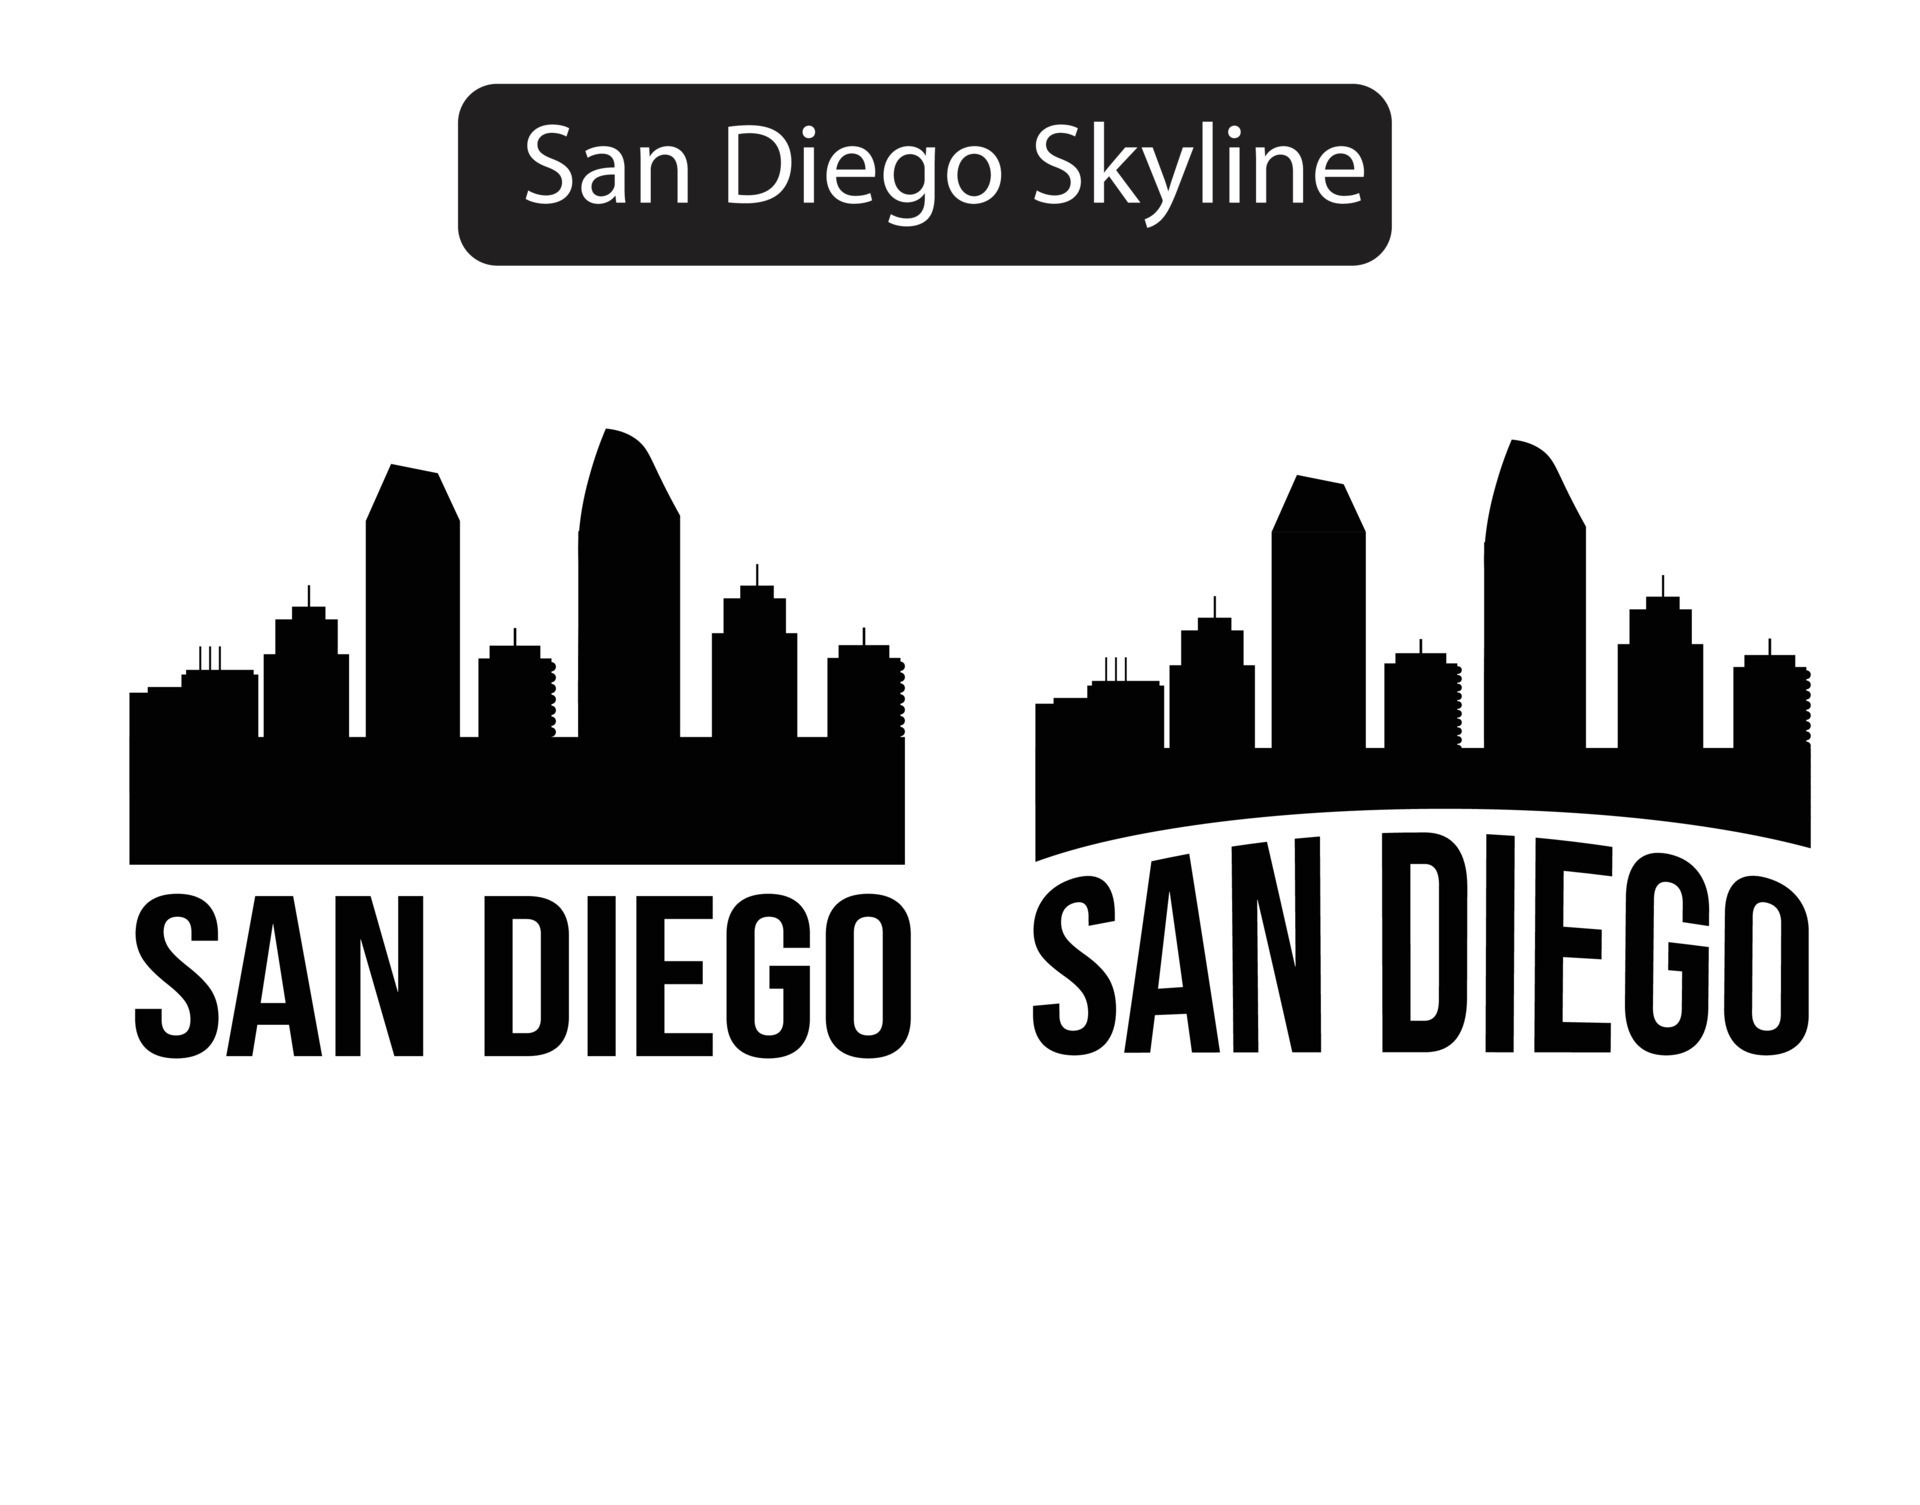 San Diego Skyline Tattoo Designs - wide 8